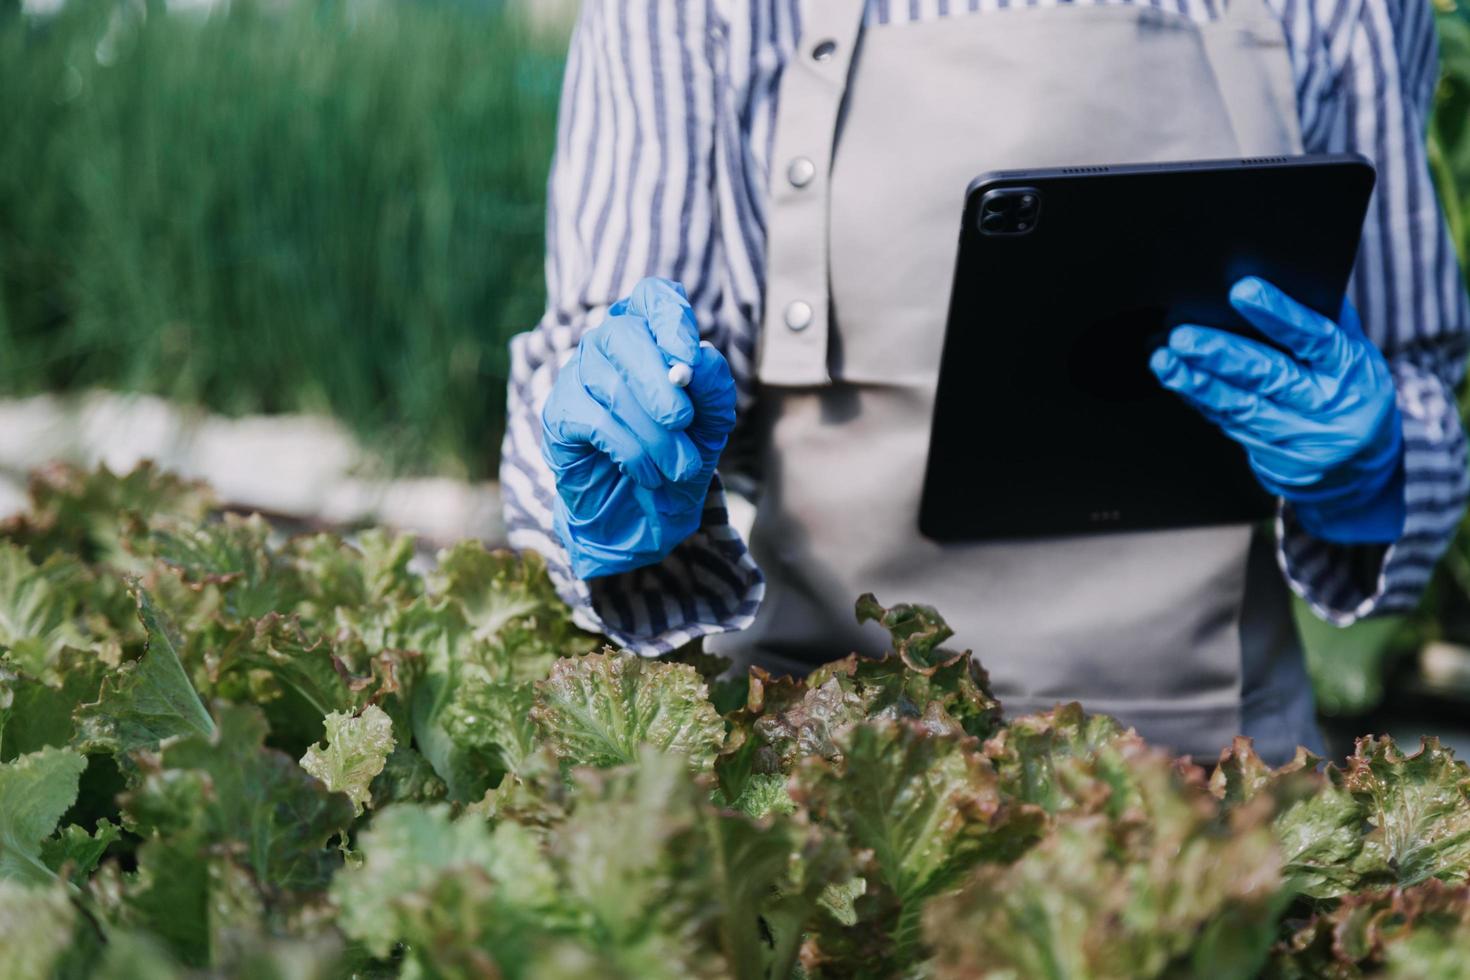 un hombre de negocios futurista cultiva verduras y cultivos usando tecnología moderna de inteligencia artificial usando teléfonos móviles, sensores de temperatura y humedad, rastreo de agua, control climático, íconos de datos holográficos. foto